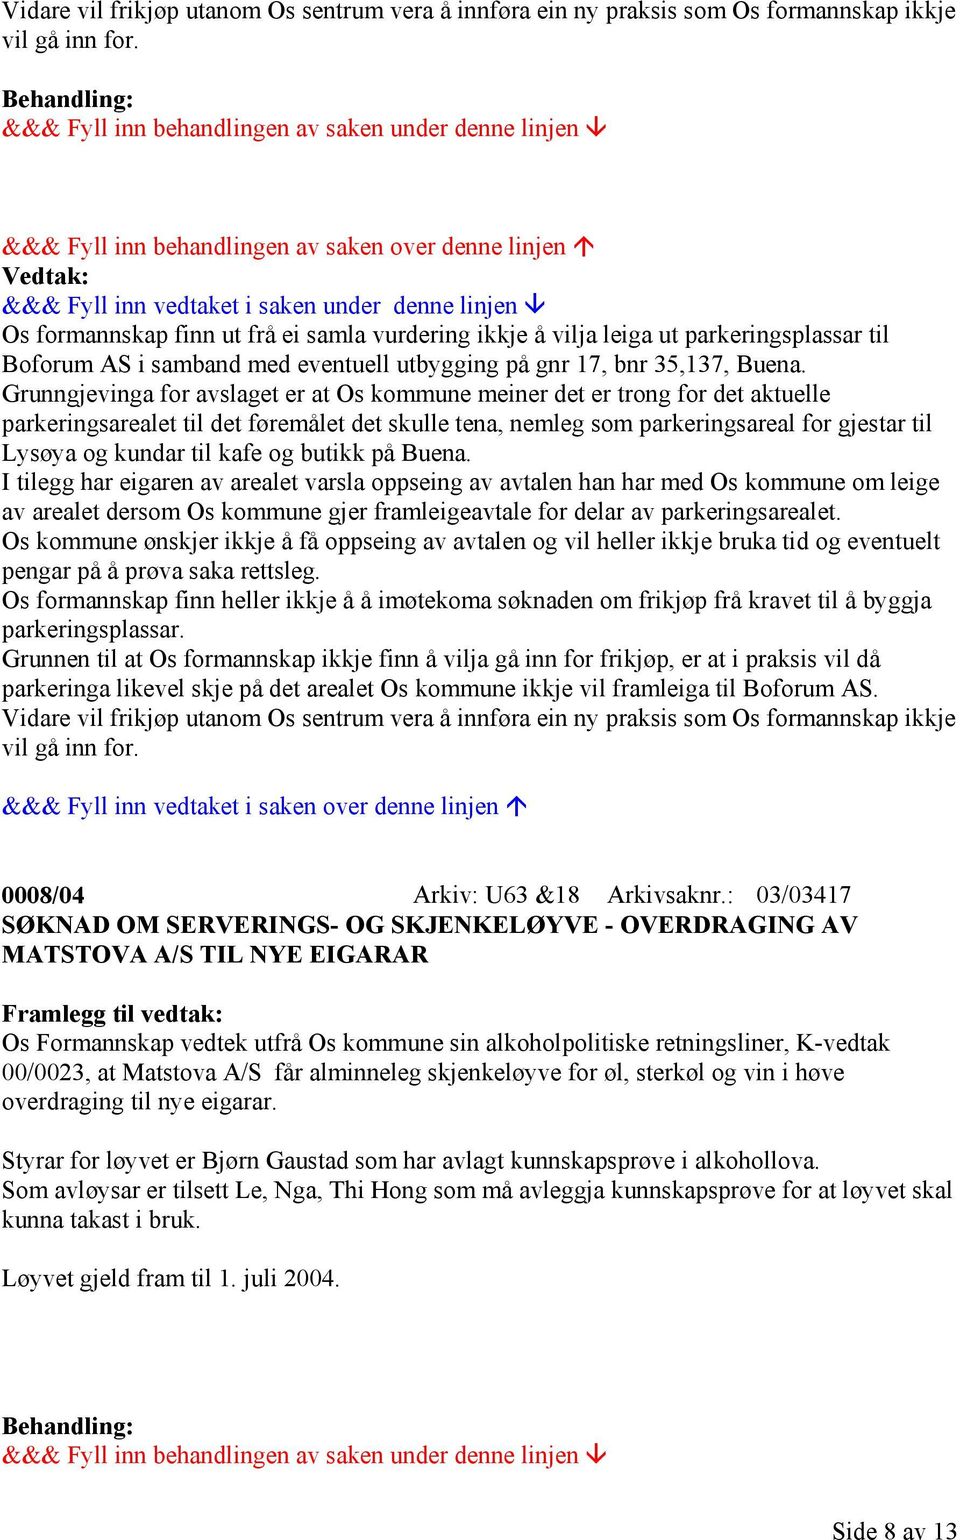 Grunngjevinga for avslaget er at Os kommune meiner det er trong for det aktuelle parkeringsarealet til det føremålet det skulle tena, nemleg som parkeringsareal for gjestar til Lysøya og kundar til